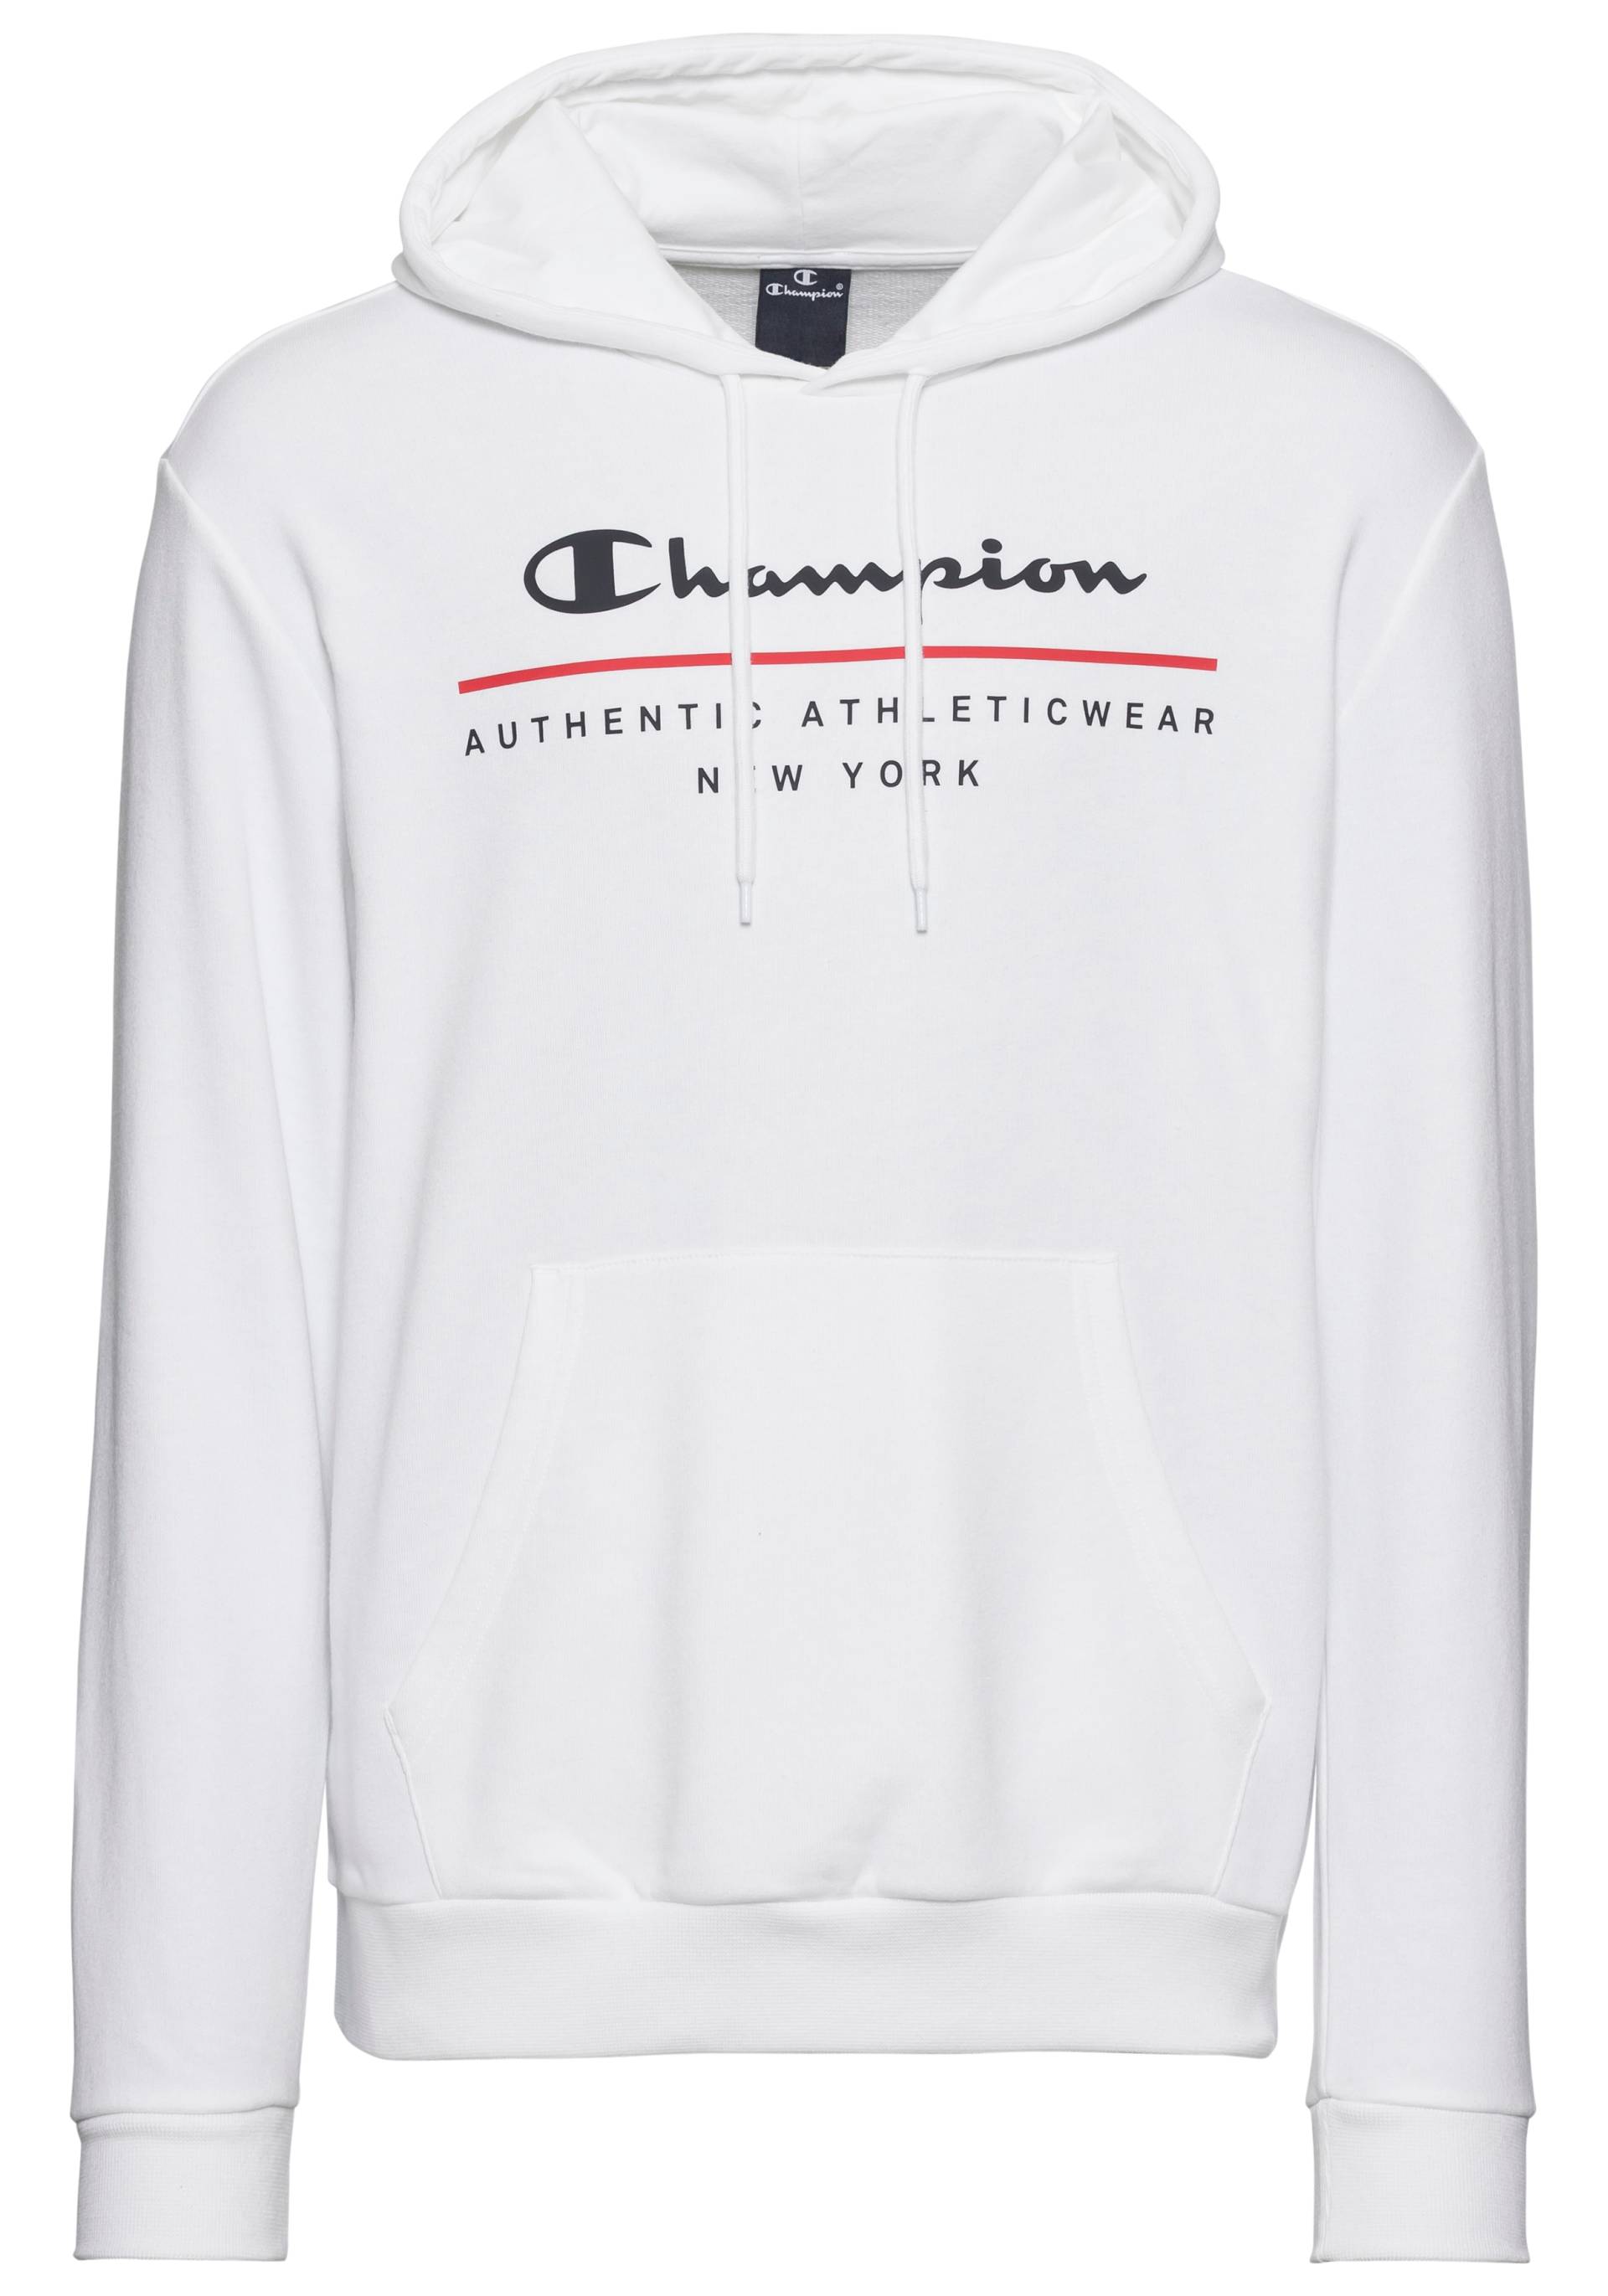 Champion Kapuzensweatshirt »Graphic Shop Hooded Sweatshirt« von Champion